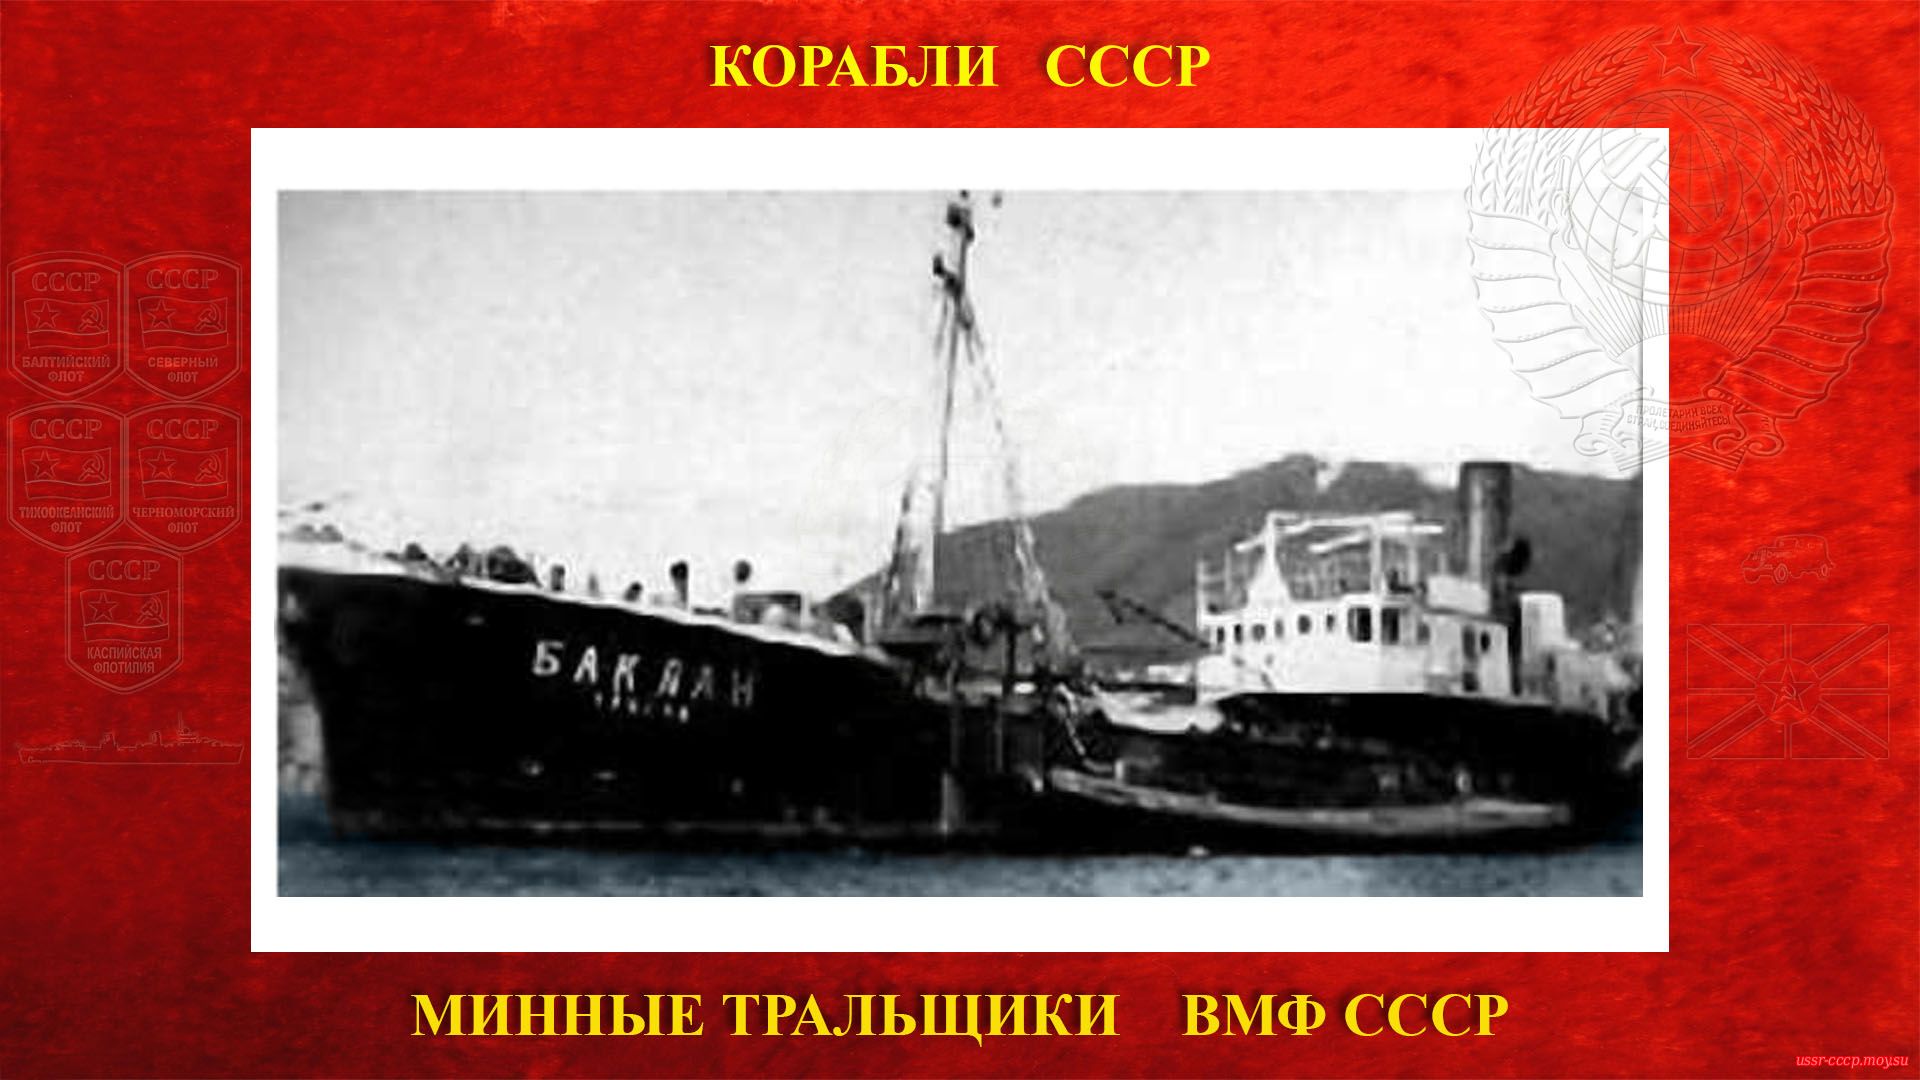 Т-14 (Баклан) — Советский минный тральщик ВМФ СССР (повествование)